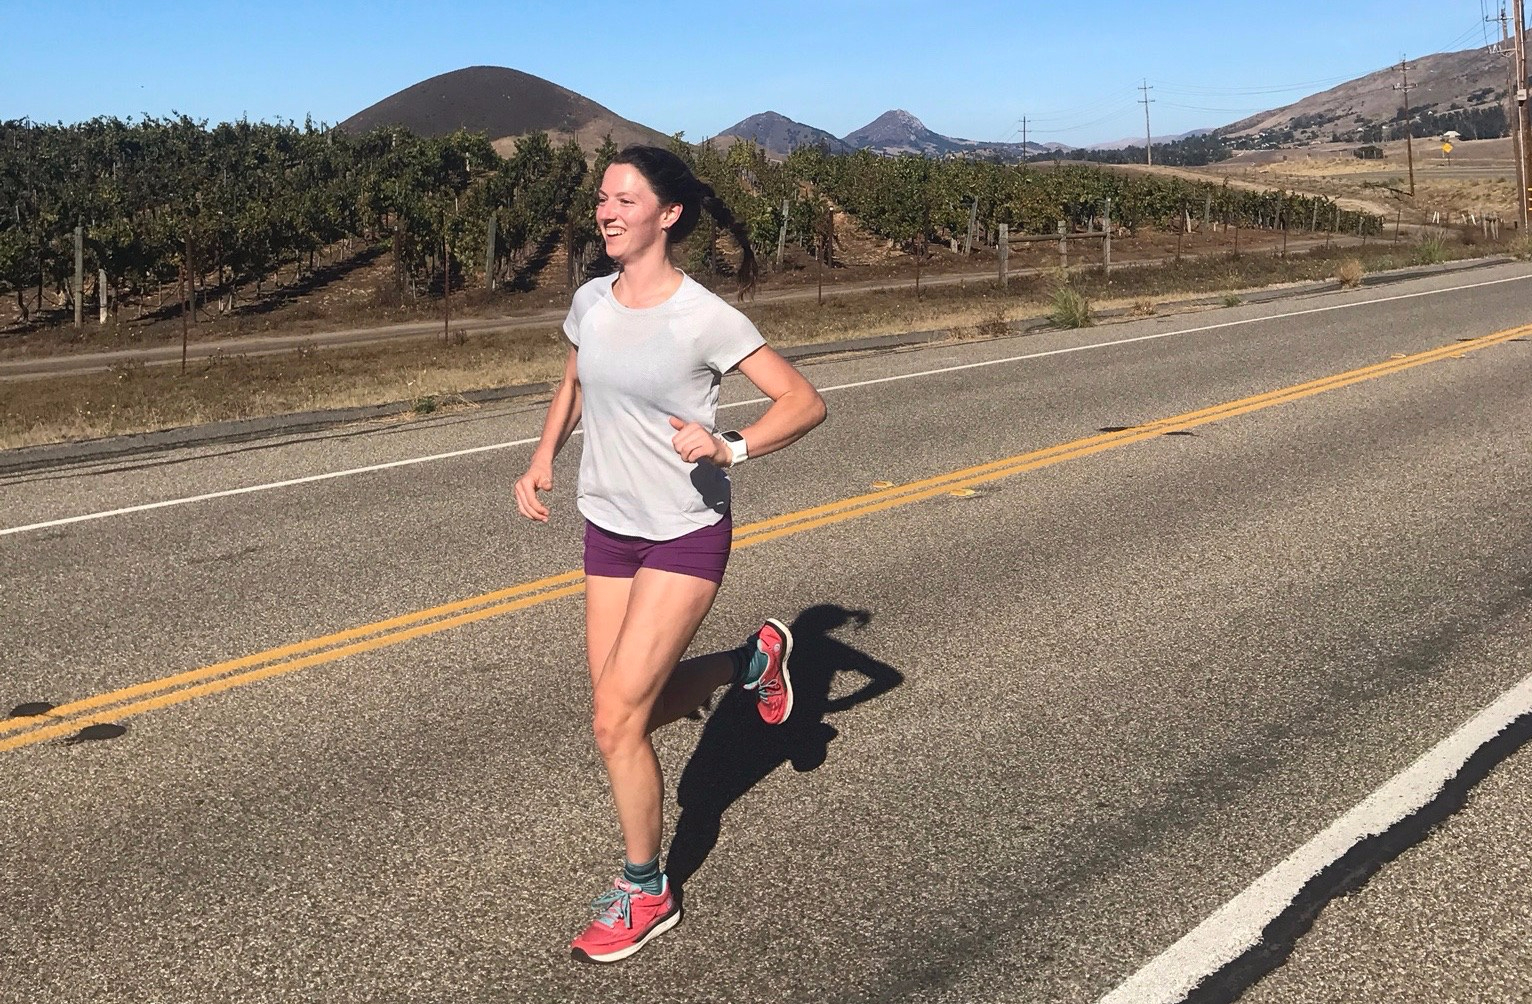 Runners in the Wild: Erin Clark